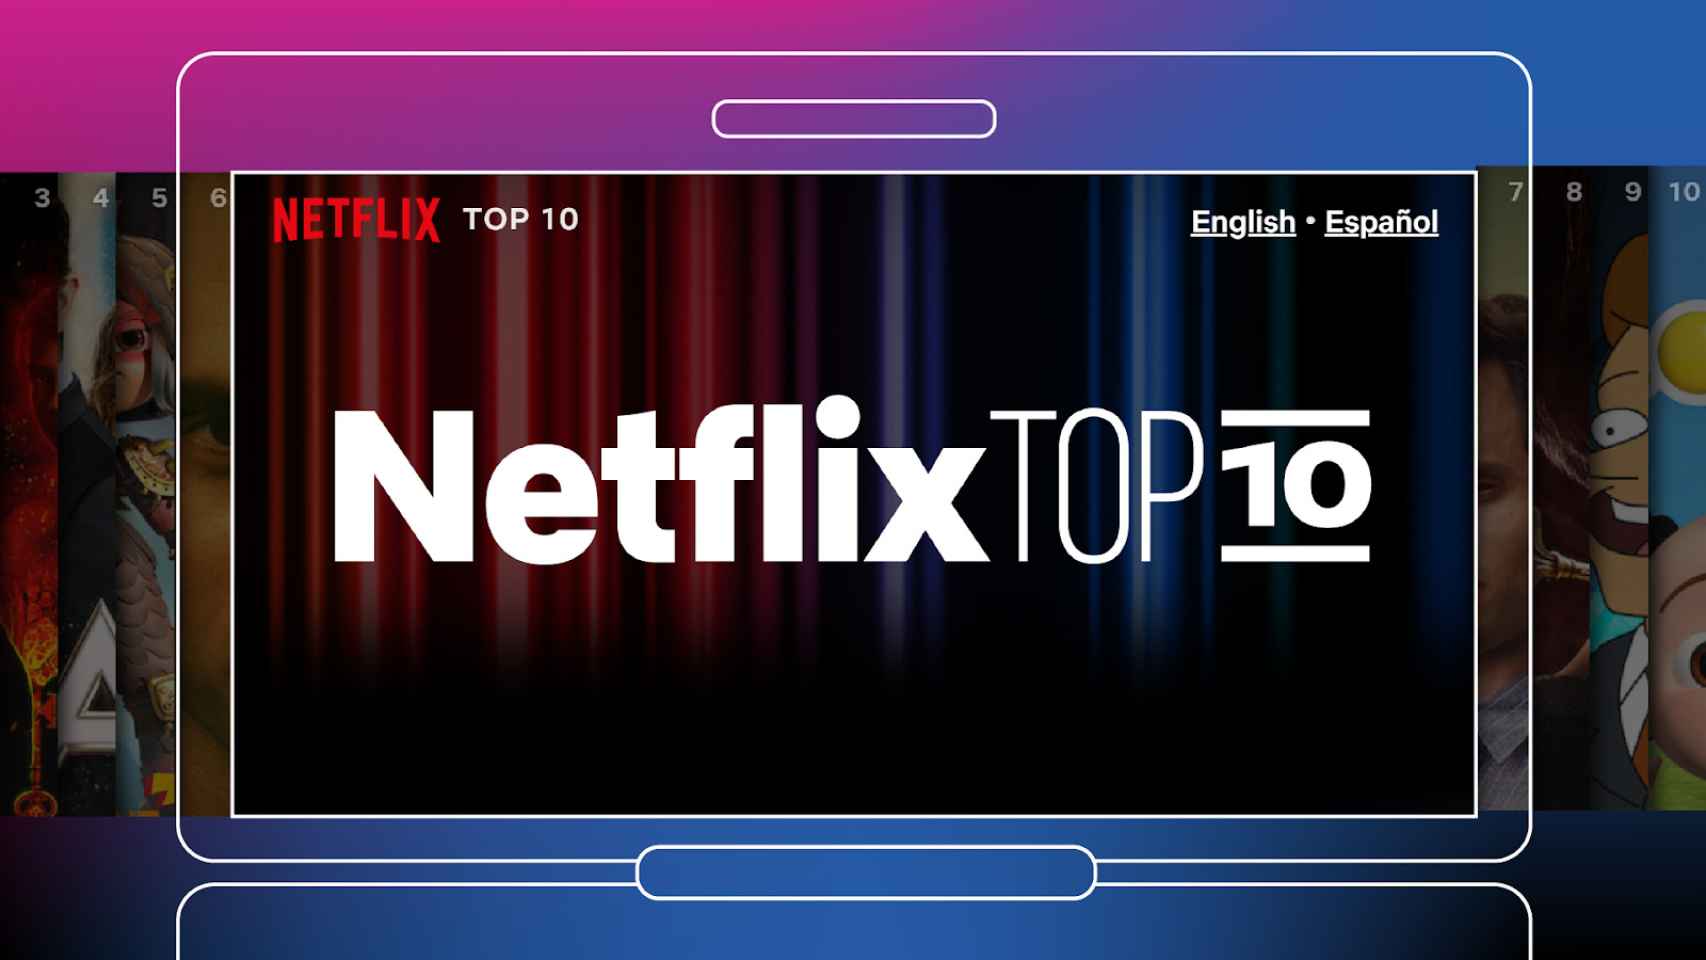 Netflix publicará cada martes sus Top 10 con más datos.